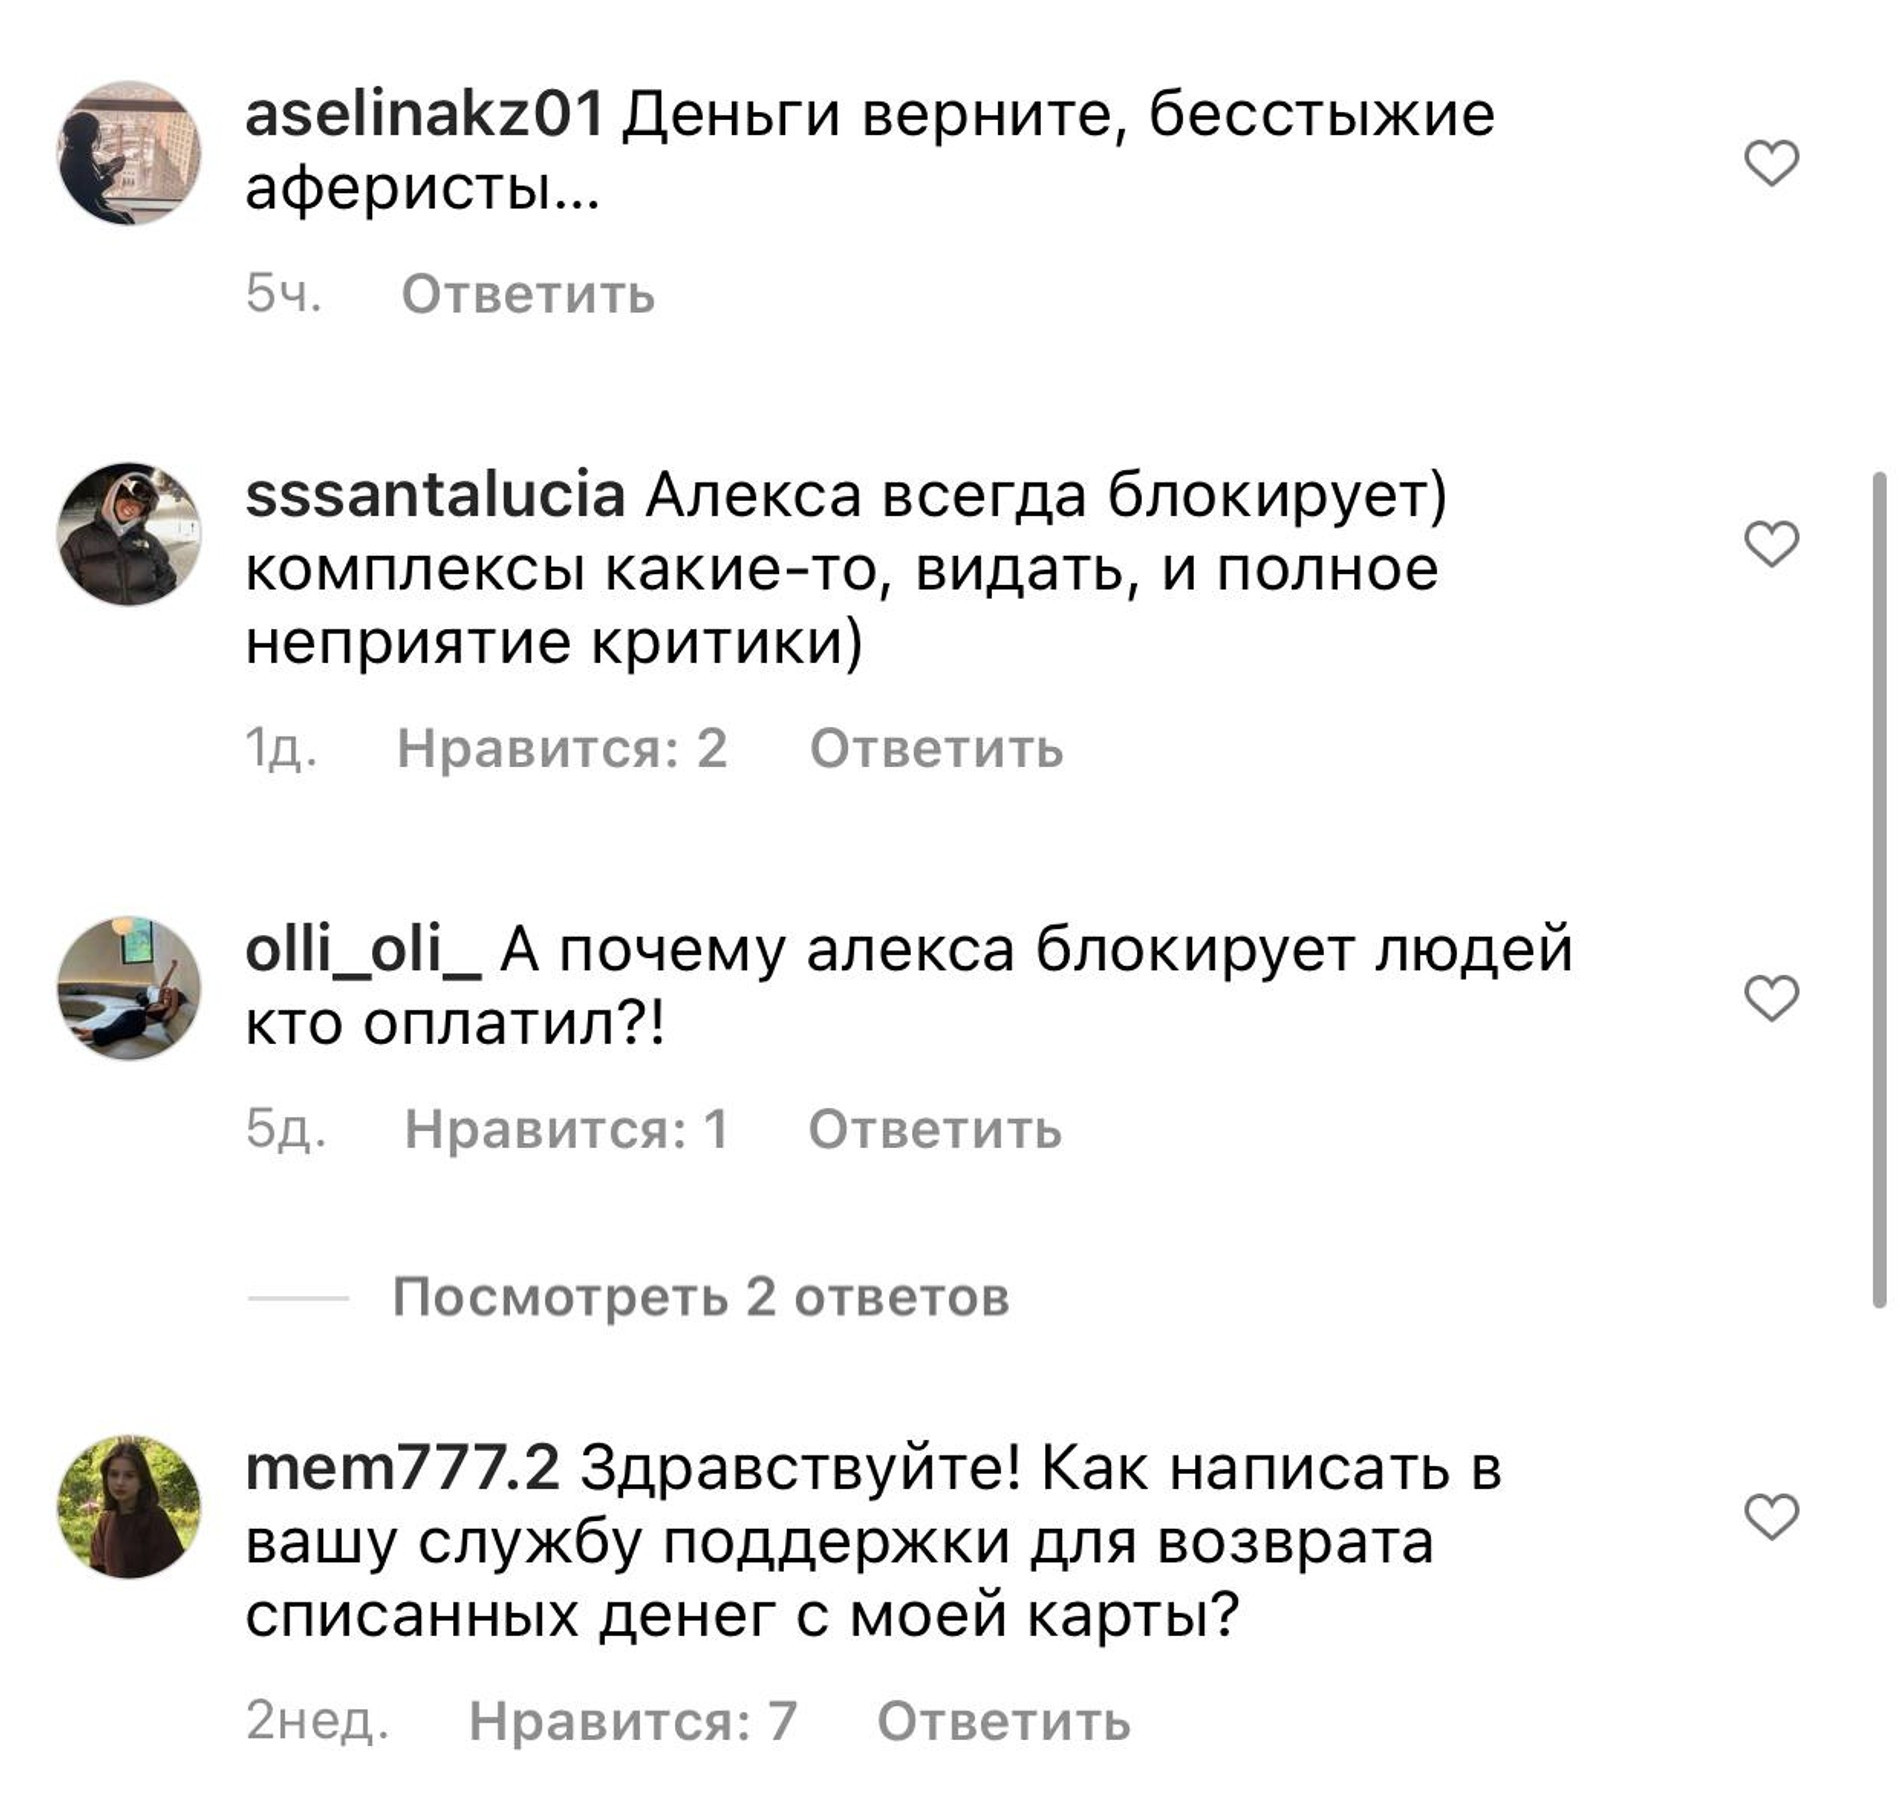 Скрин комментариев в инстаграме Вячеслава Дайчева